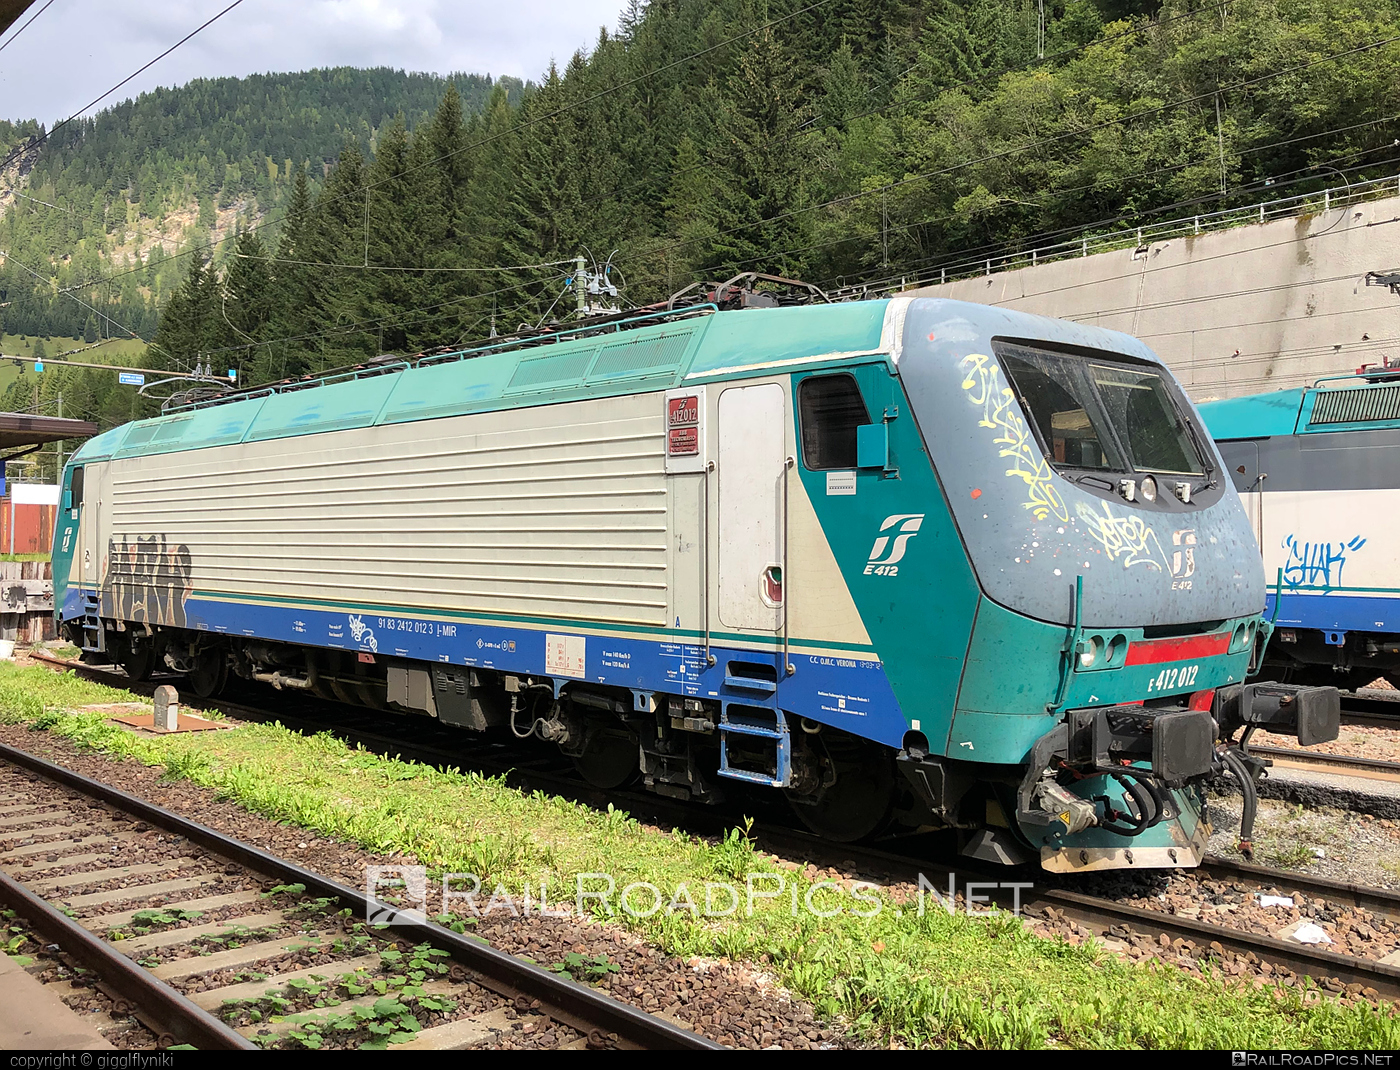 FS Class E.412 - E412 012 operated by Mercitalia Rail S.r.l. #e412 #ferroviedellostato #fs #fsClassE412 #fsitaliane #graffiti #mercitalia #trenitalia #trenitaliaspa